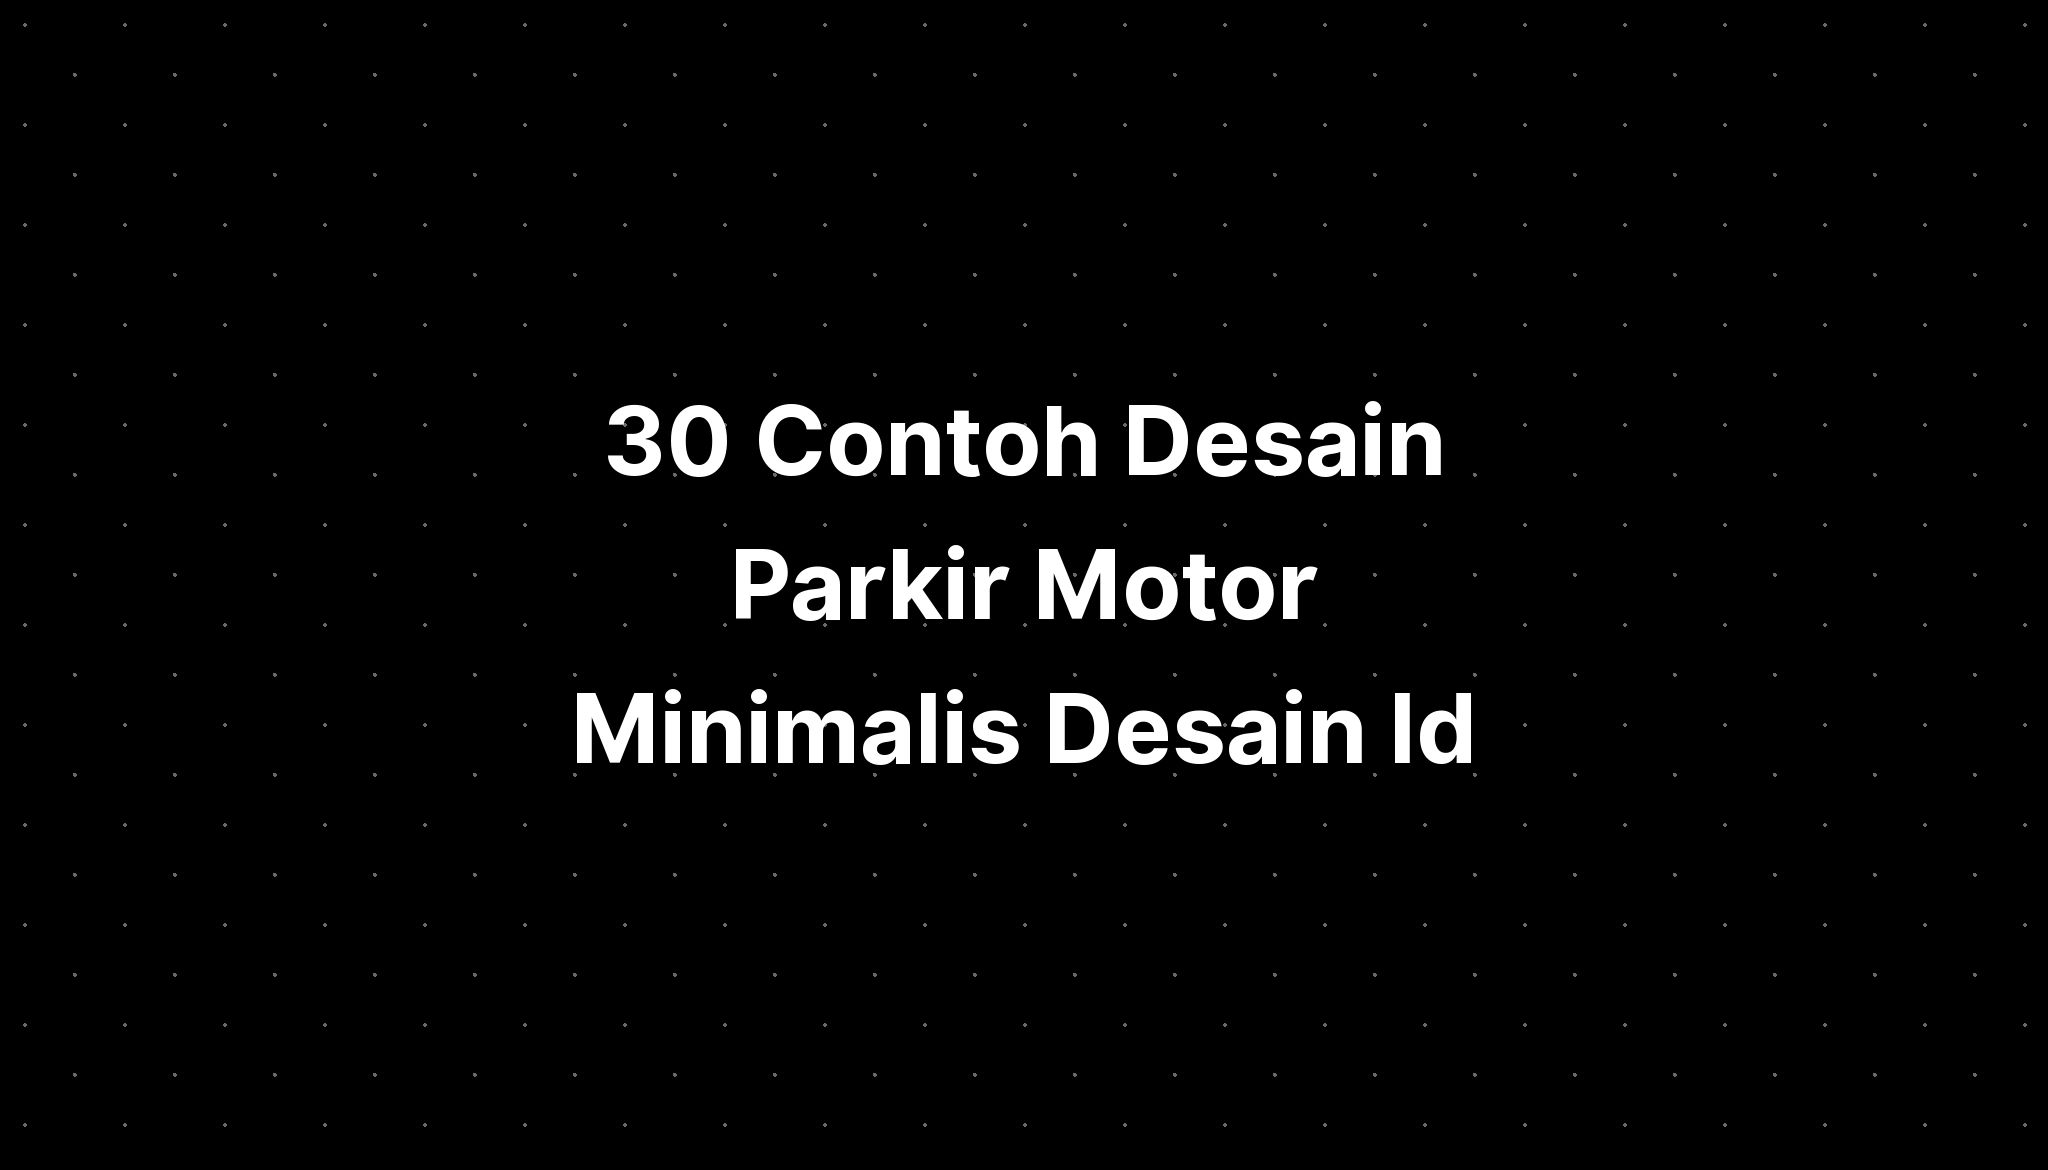 30 Contoh Desain Parkir Motor Minimalis Desain Id Imagesee 3150